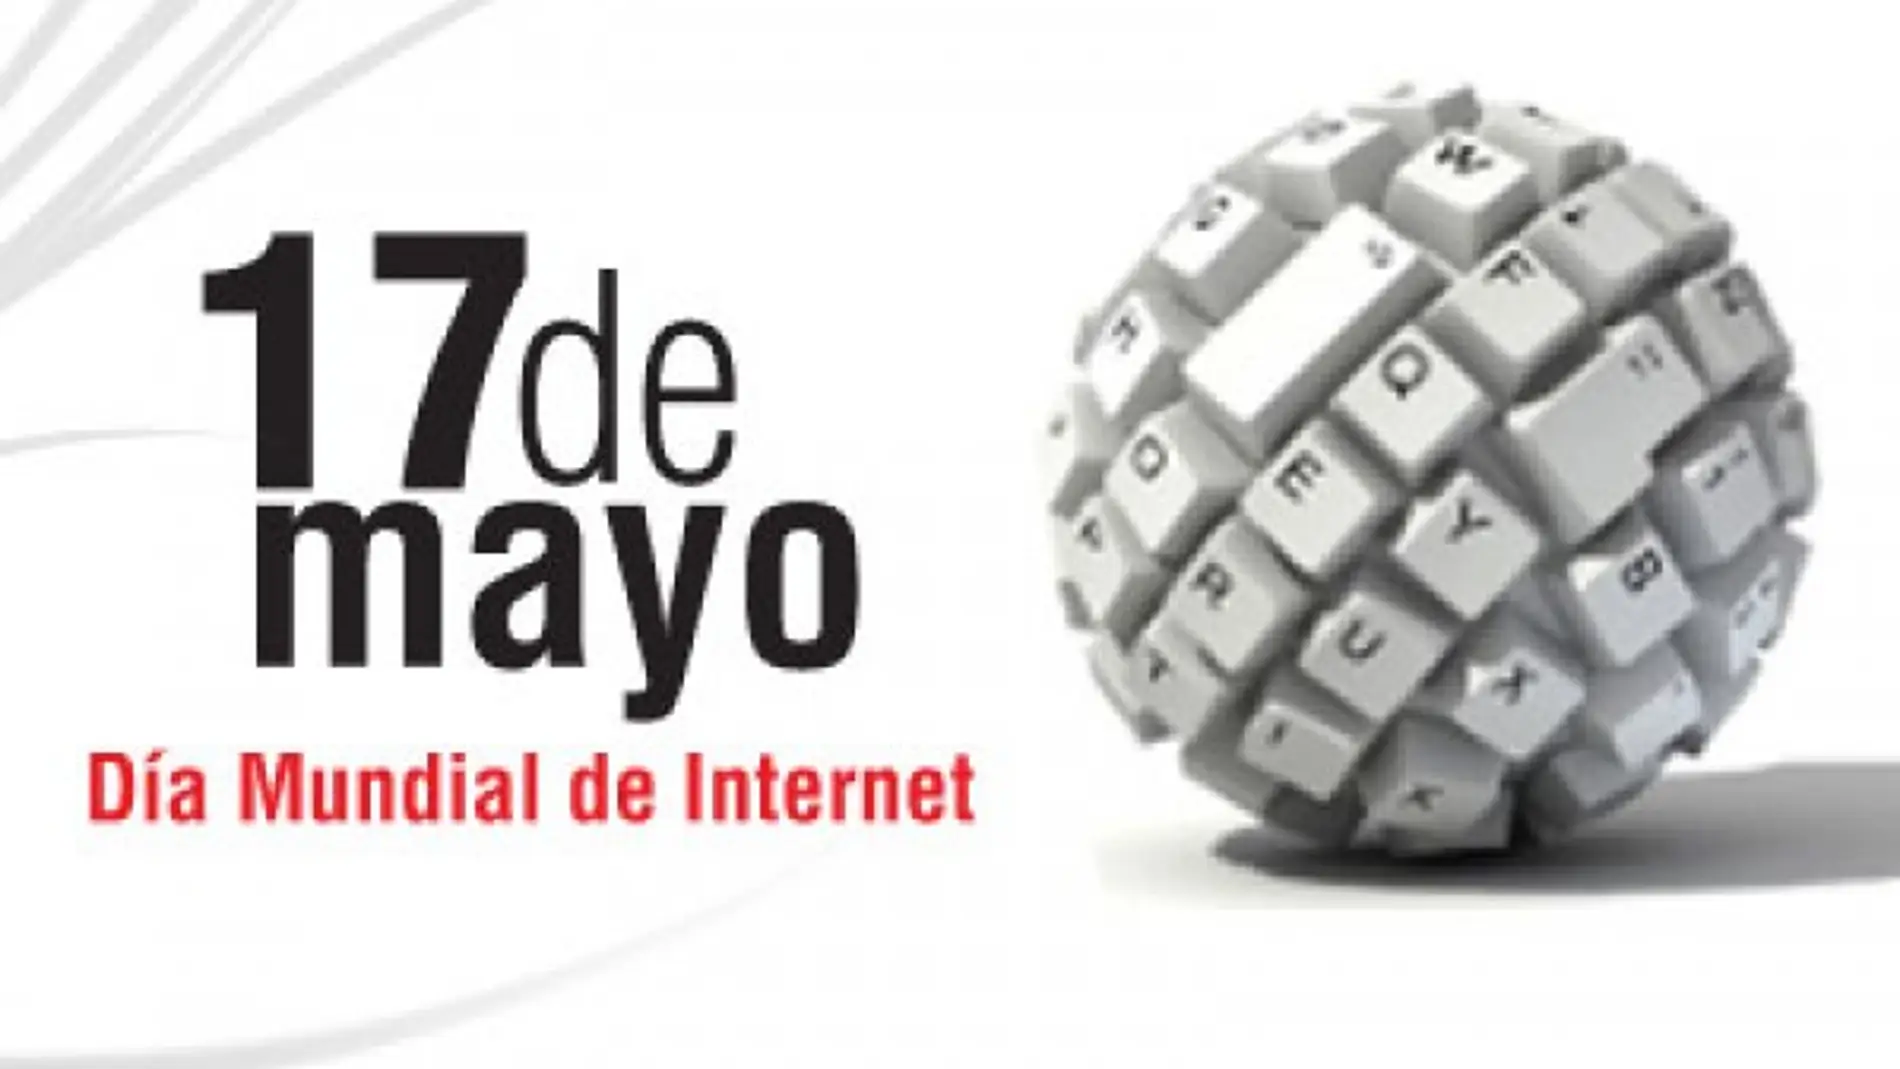 La iniciativa del Día de Internet surgió por iniciativa de la Asociación de Usuarios de Internet, a la que se sumaron diferentes asociaciones españolas 